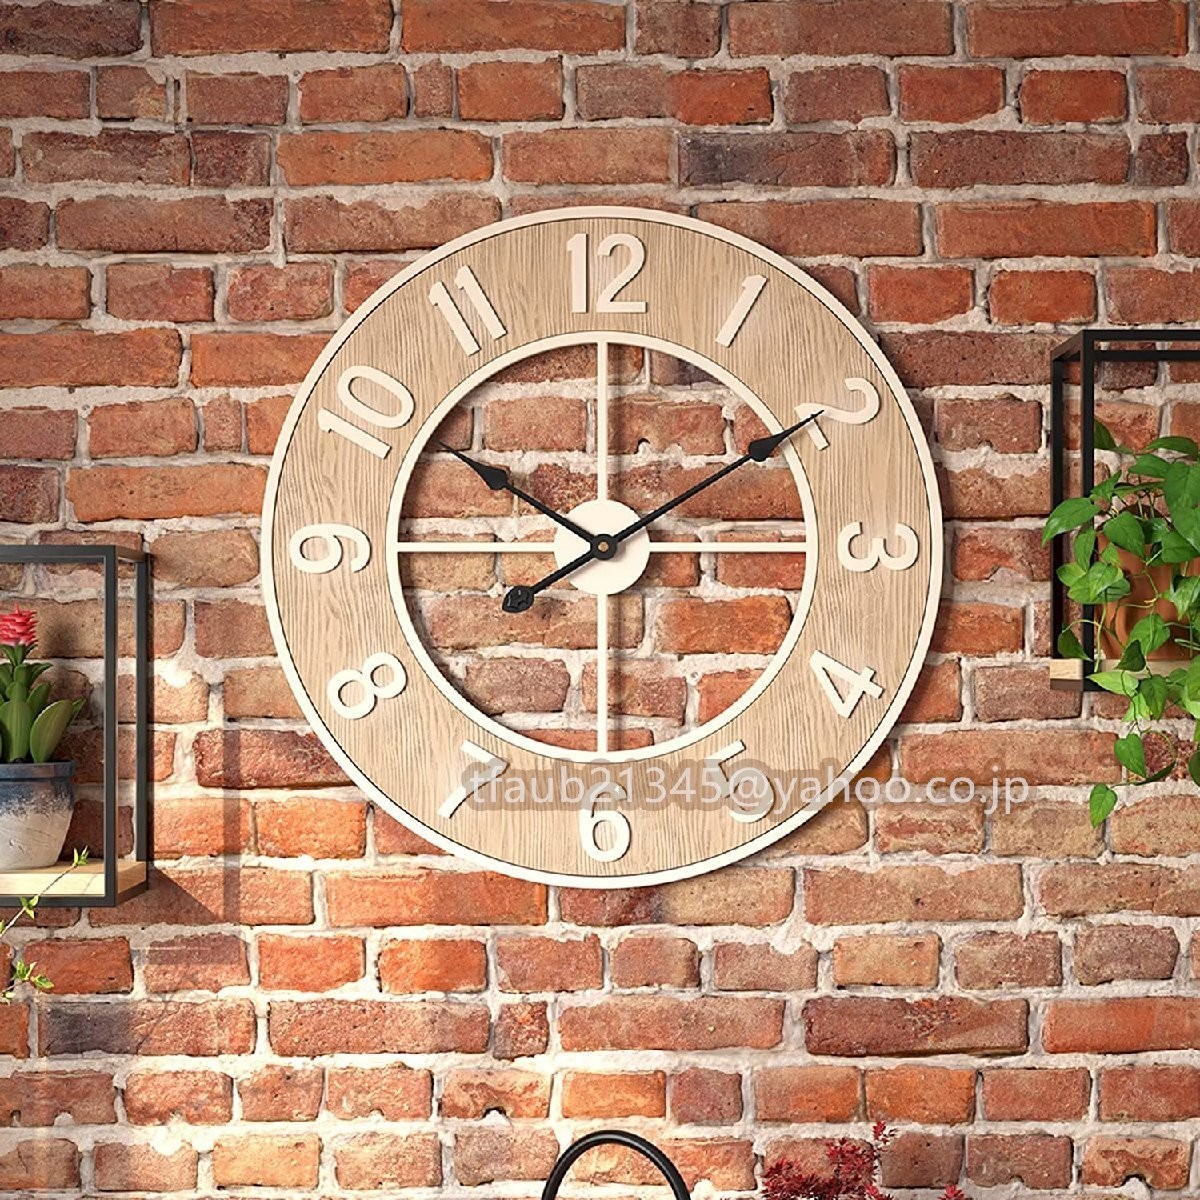 掛け時計 60cm 工業スタイル おしゃれ 壁掛け時計 レトロ金属 円形 連続秒針 アンティーク ウォールクロック インテリア 時計 北欧_画像1